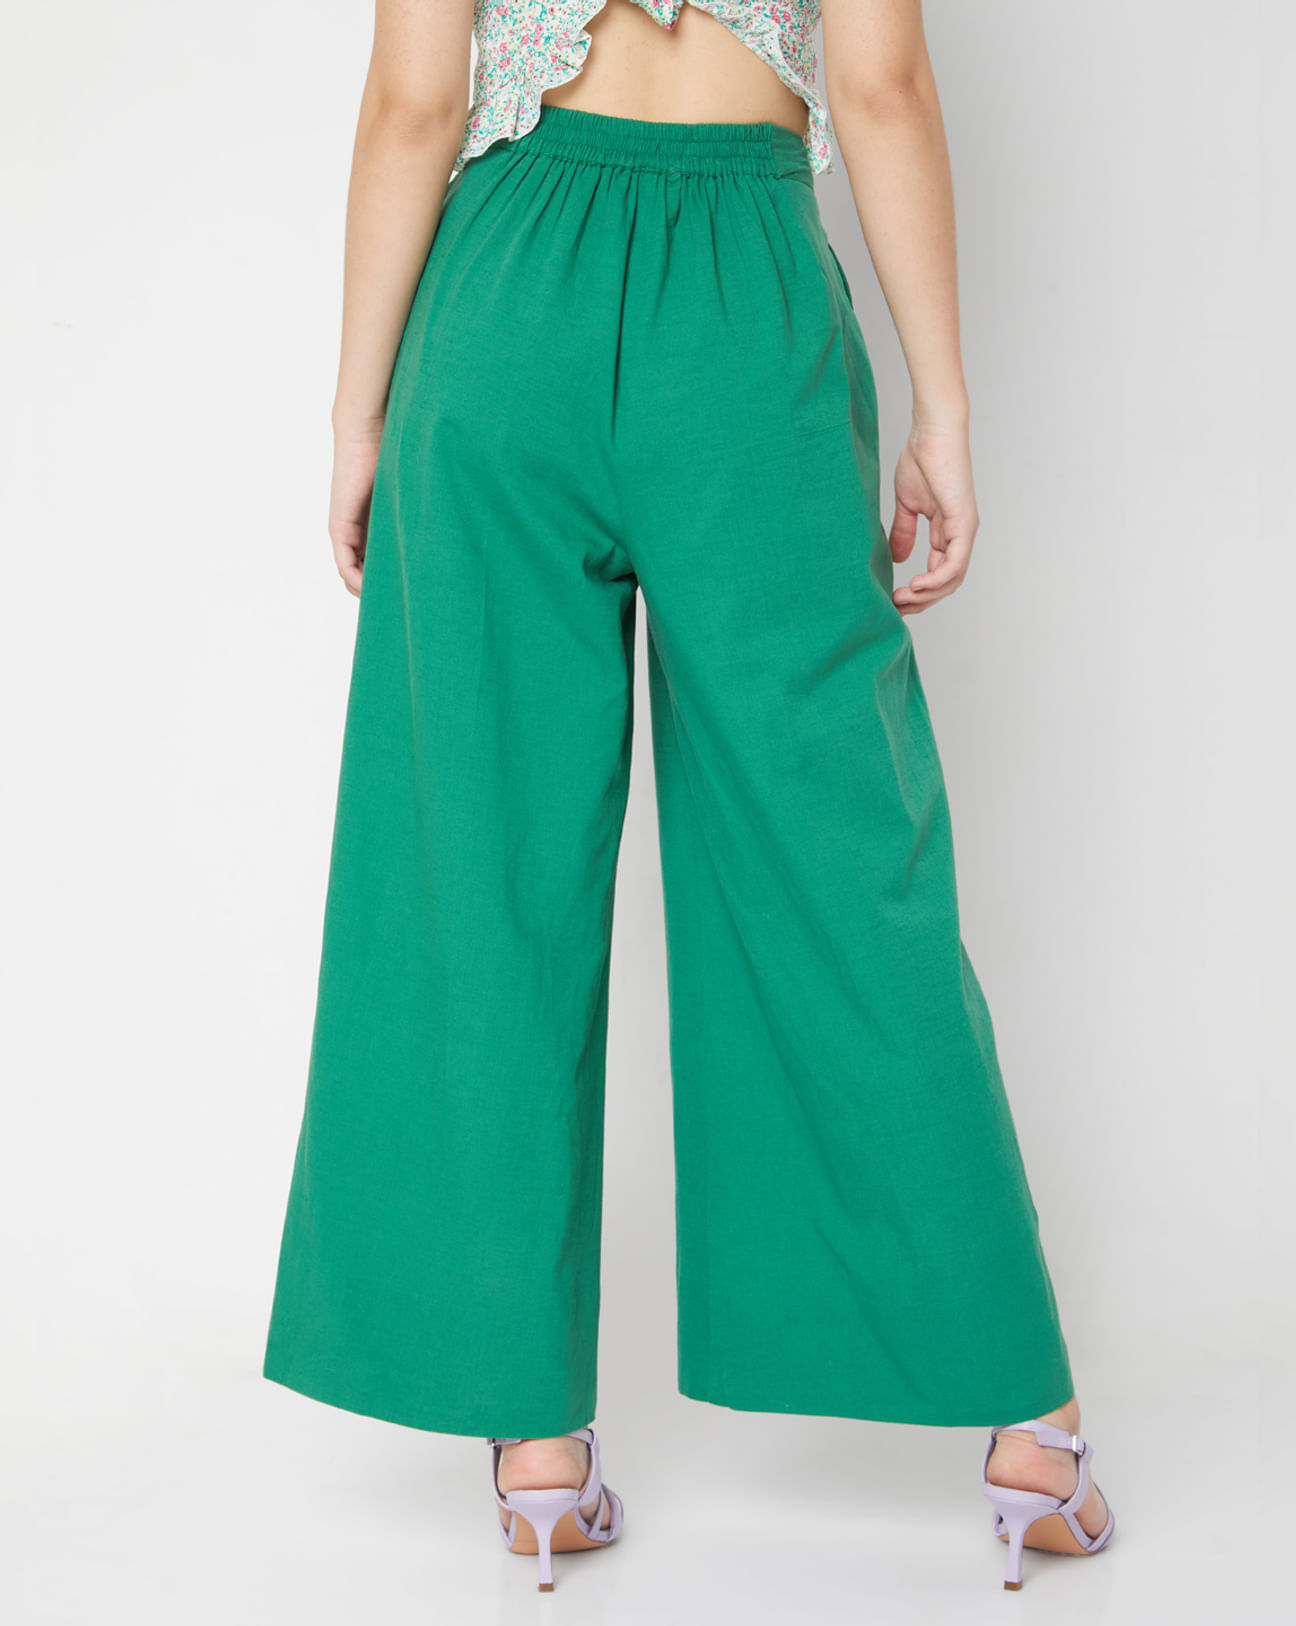 Green Wide Leg Pants|274715401-Evergreen